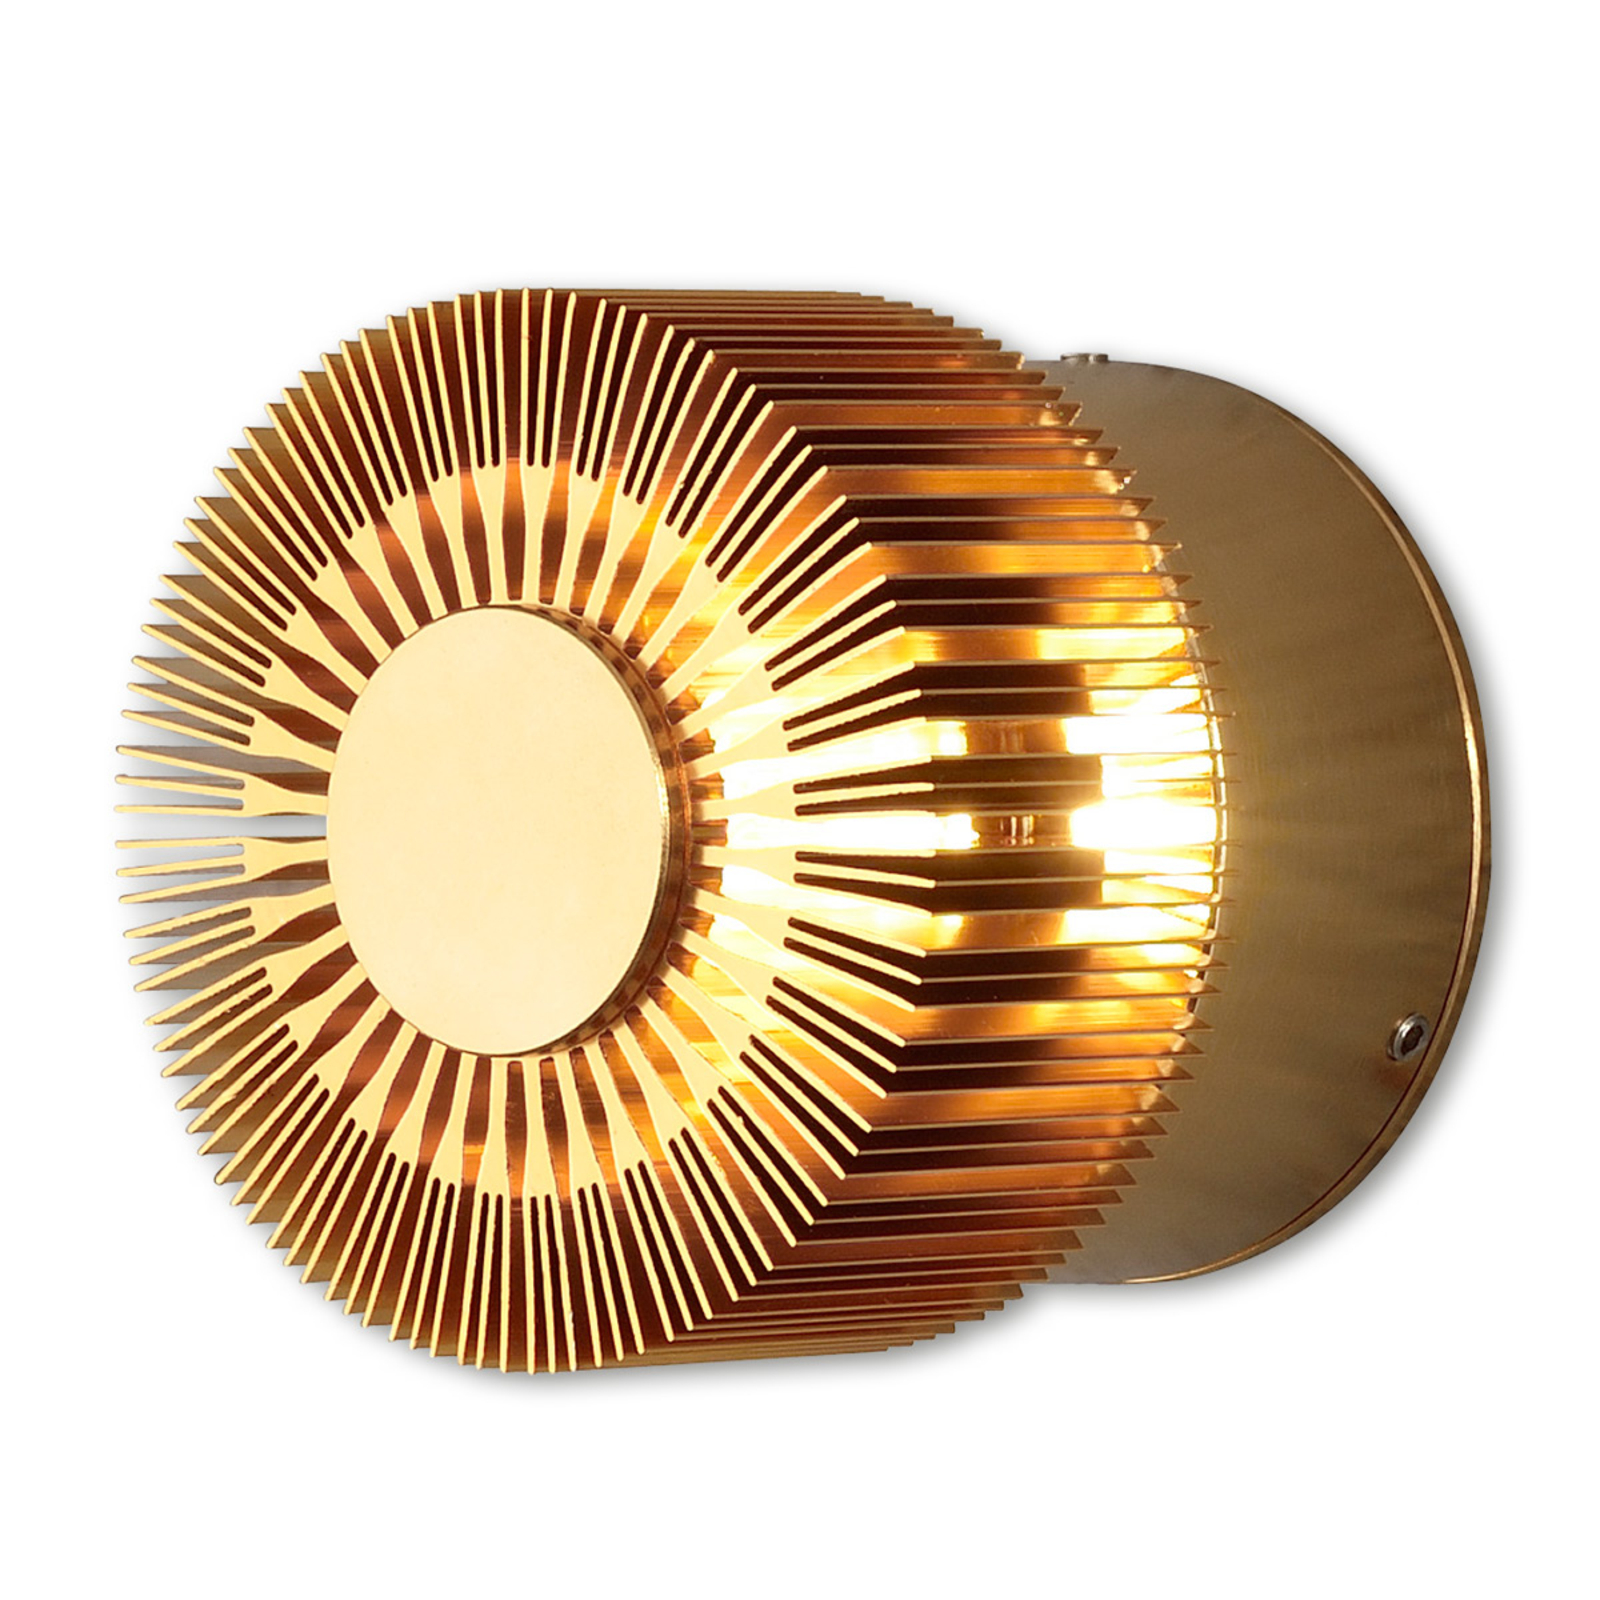 LED-Außenwandlampe Monza Strahlen rund bronze 9cm